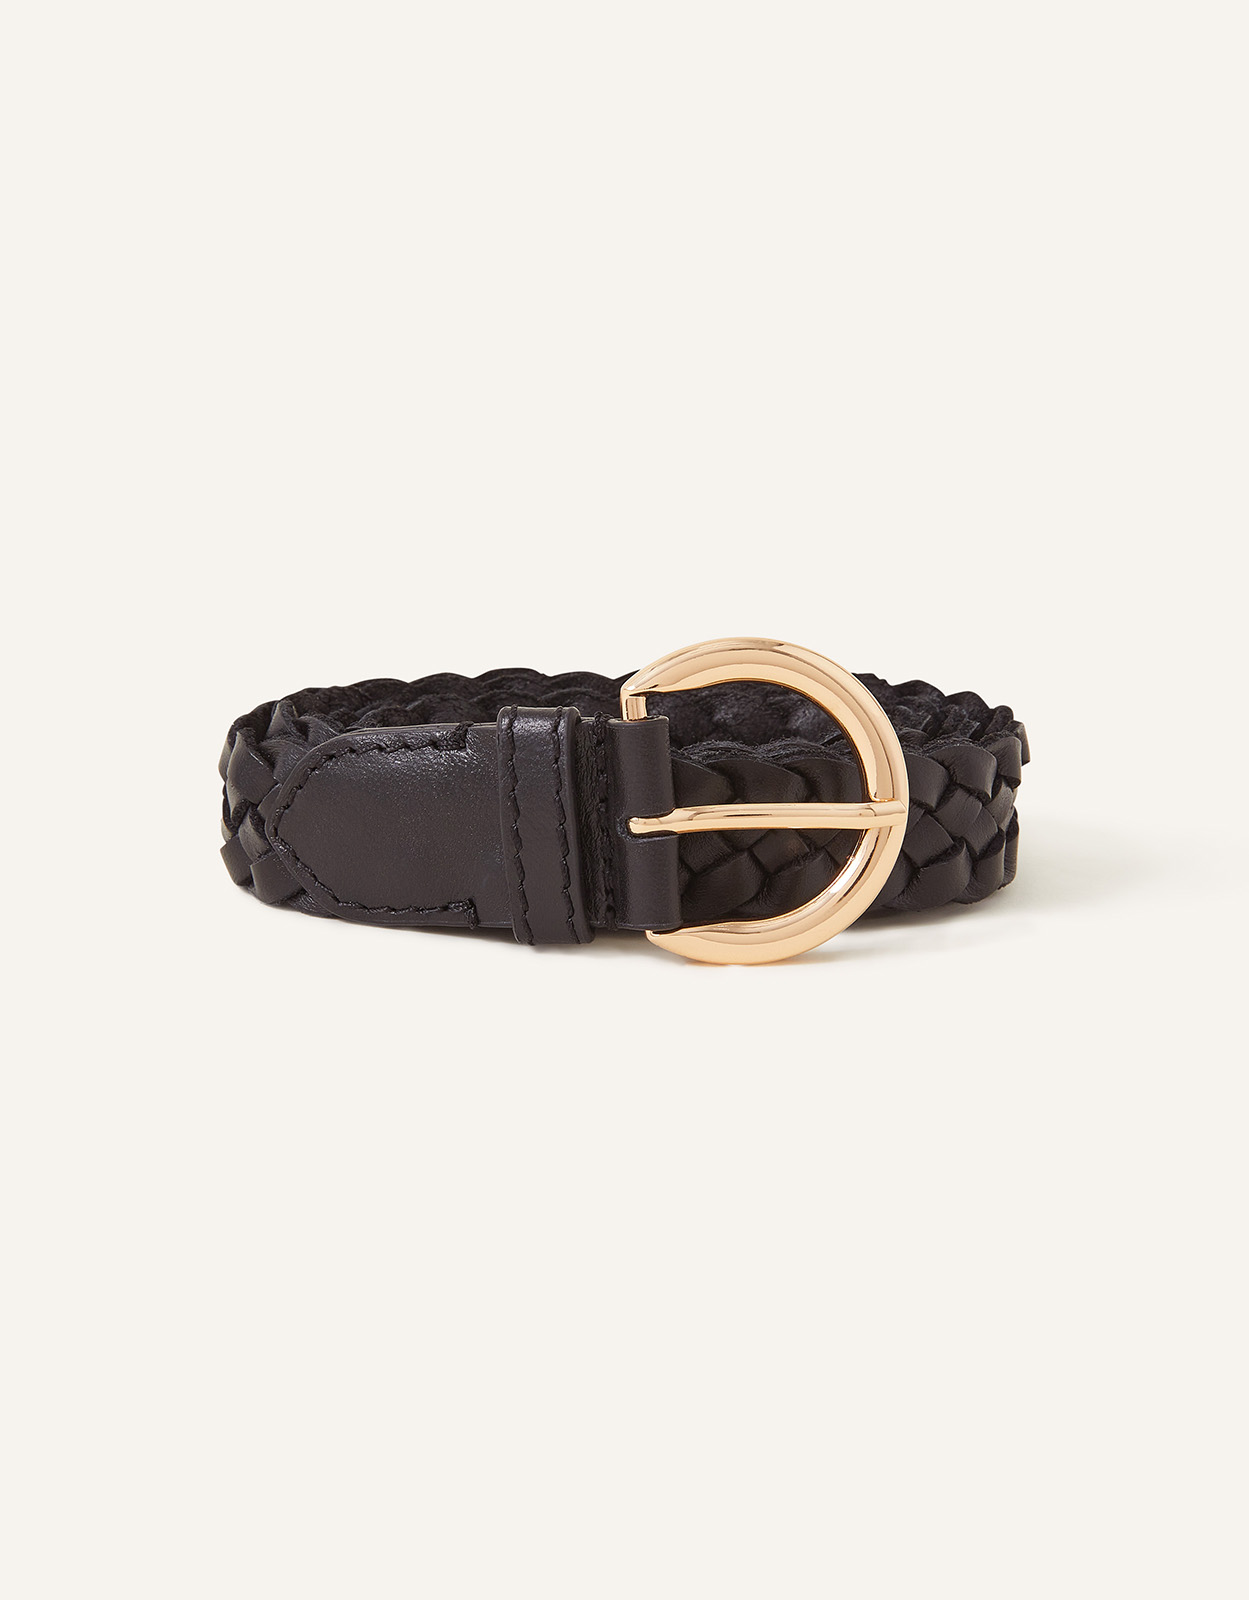 Accessorize Women's Leather Plaited Belt Black, Size: L